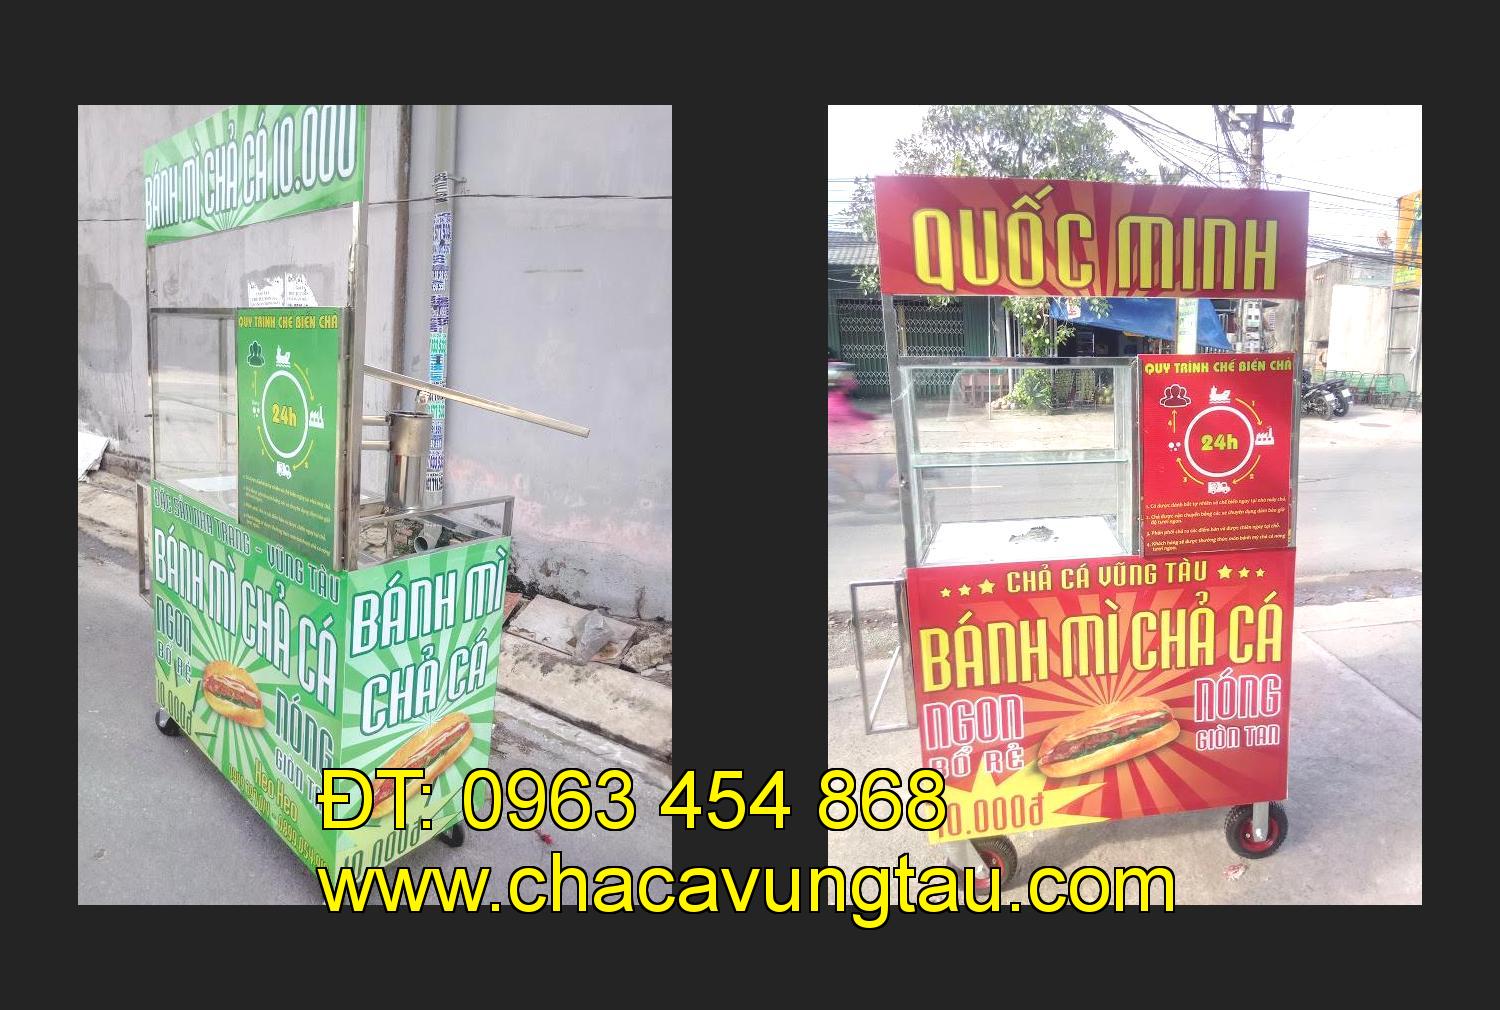 Bán xe bánh mì chả cá tại tỉnh Nghệ An